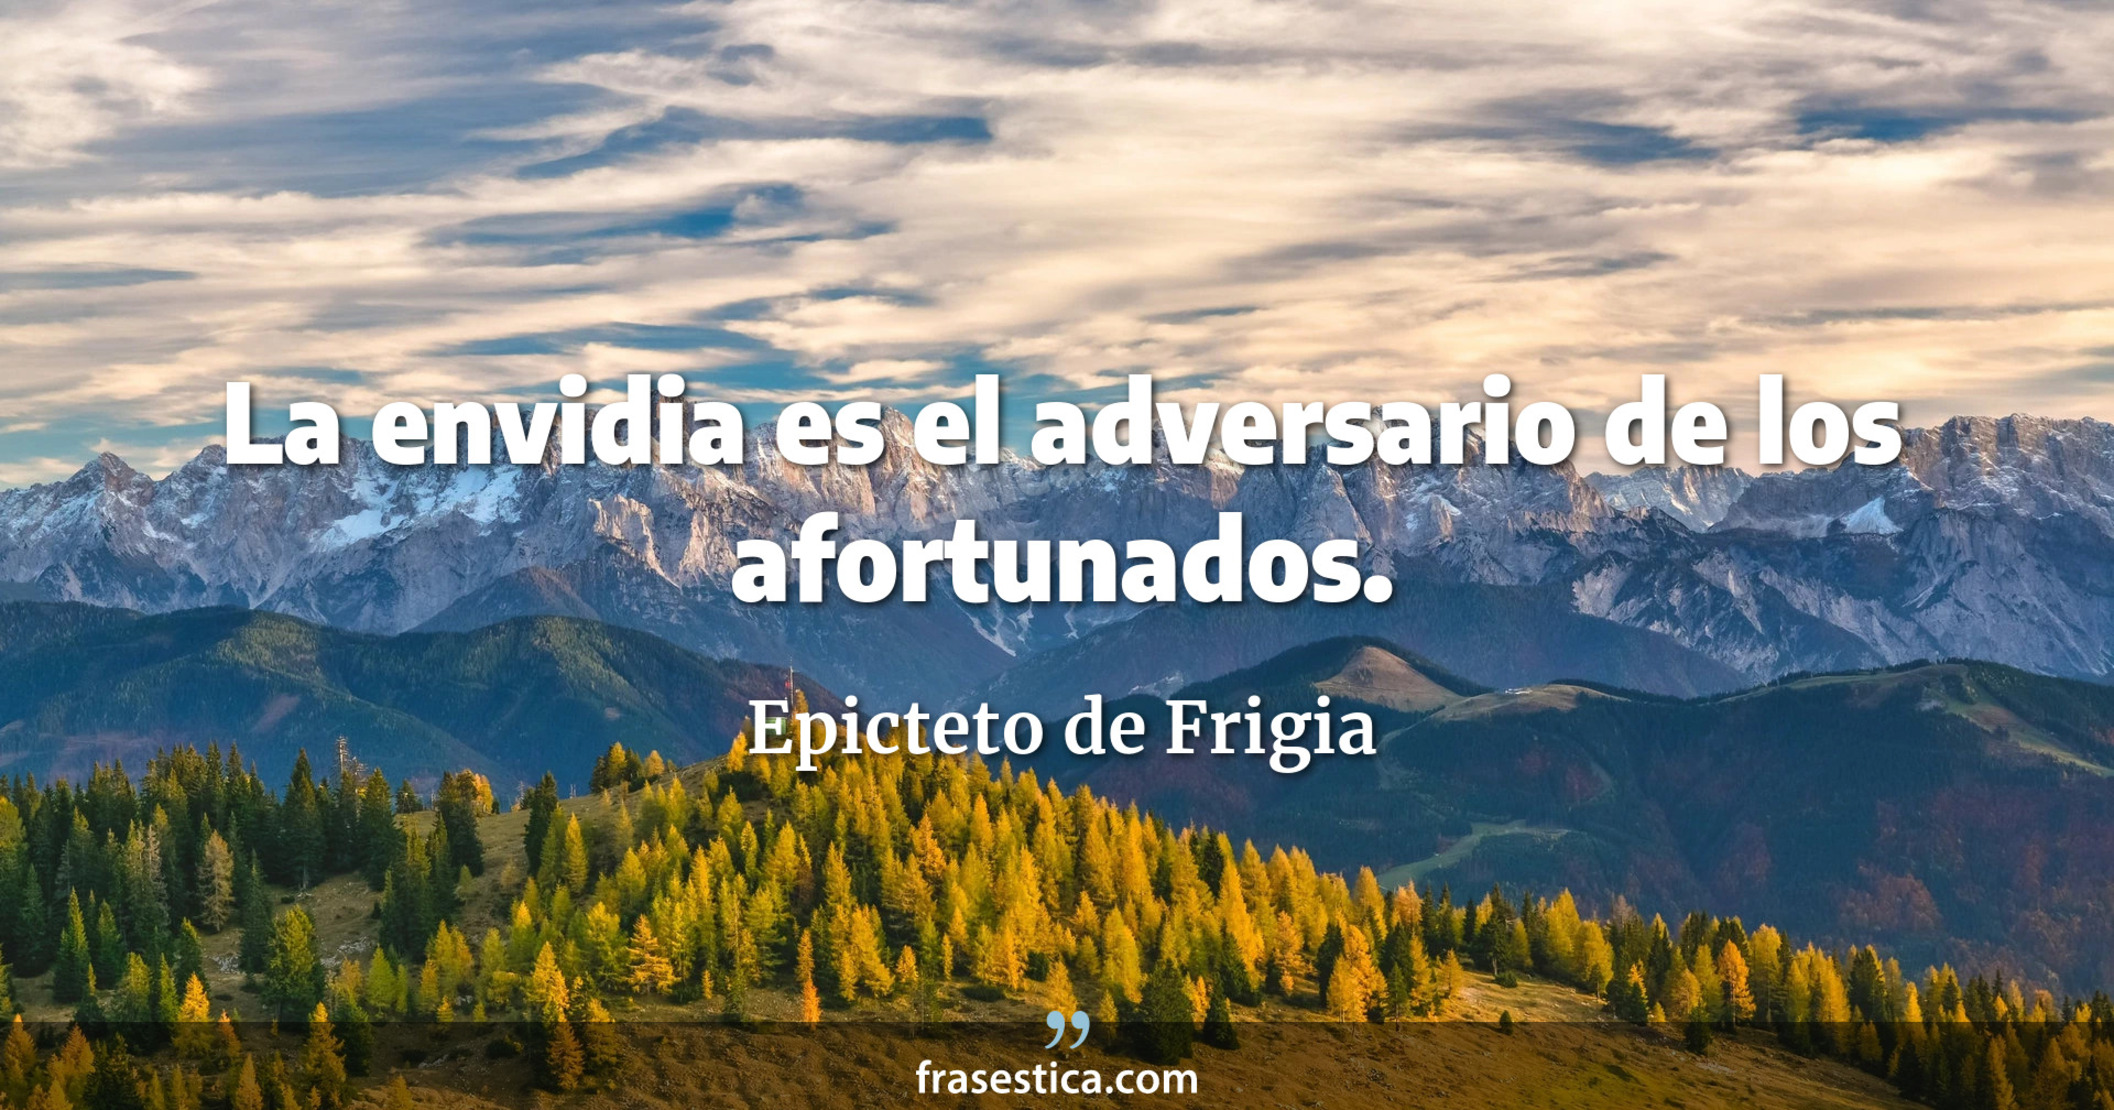 La envidia es el adversario de los afortunados. - Epicteto de Frigia